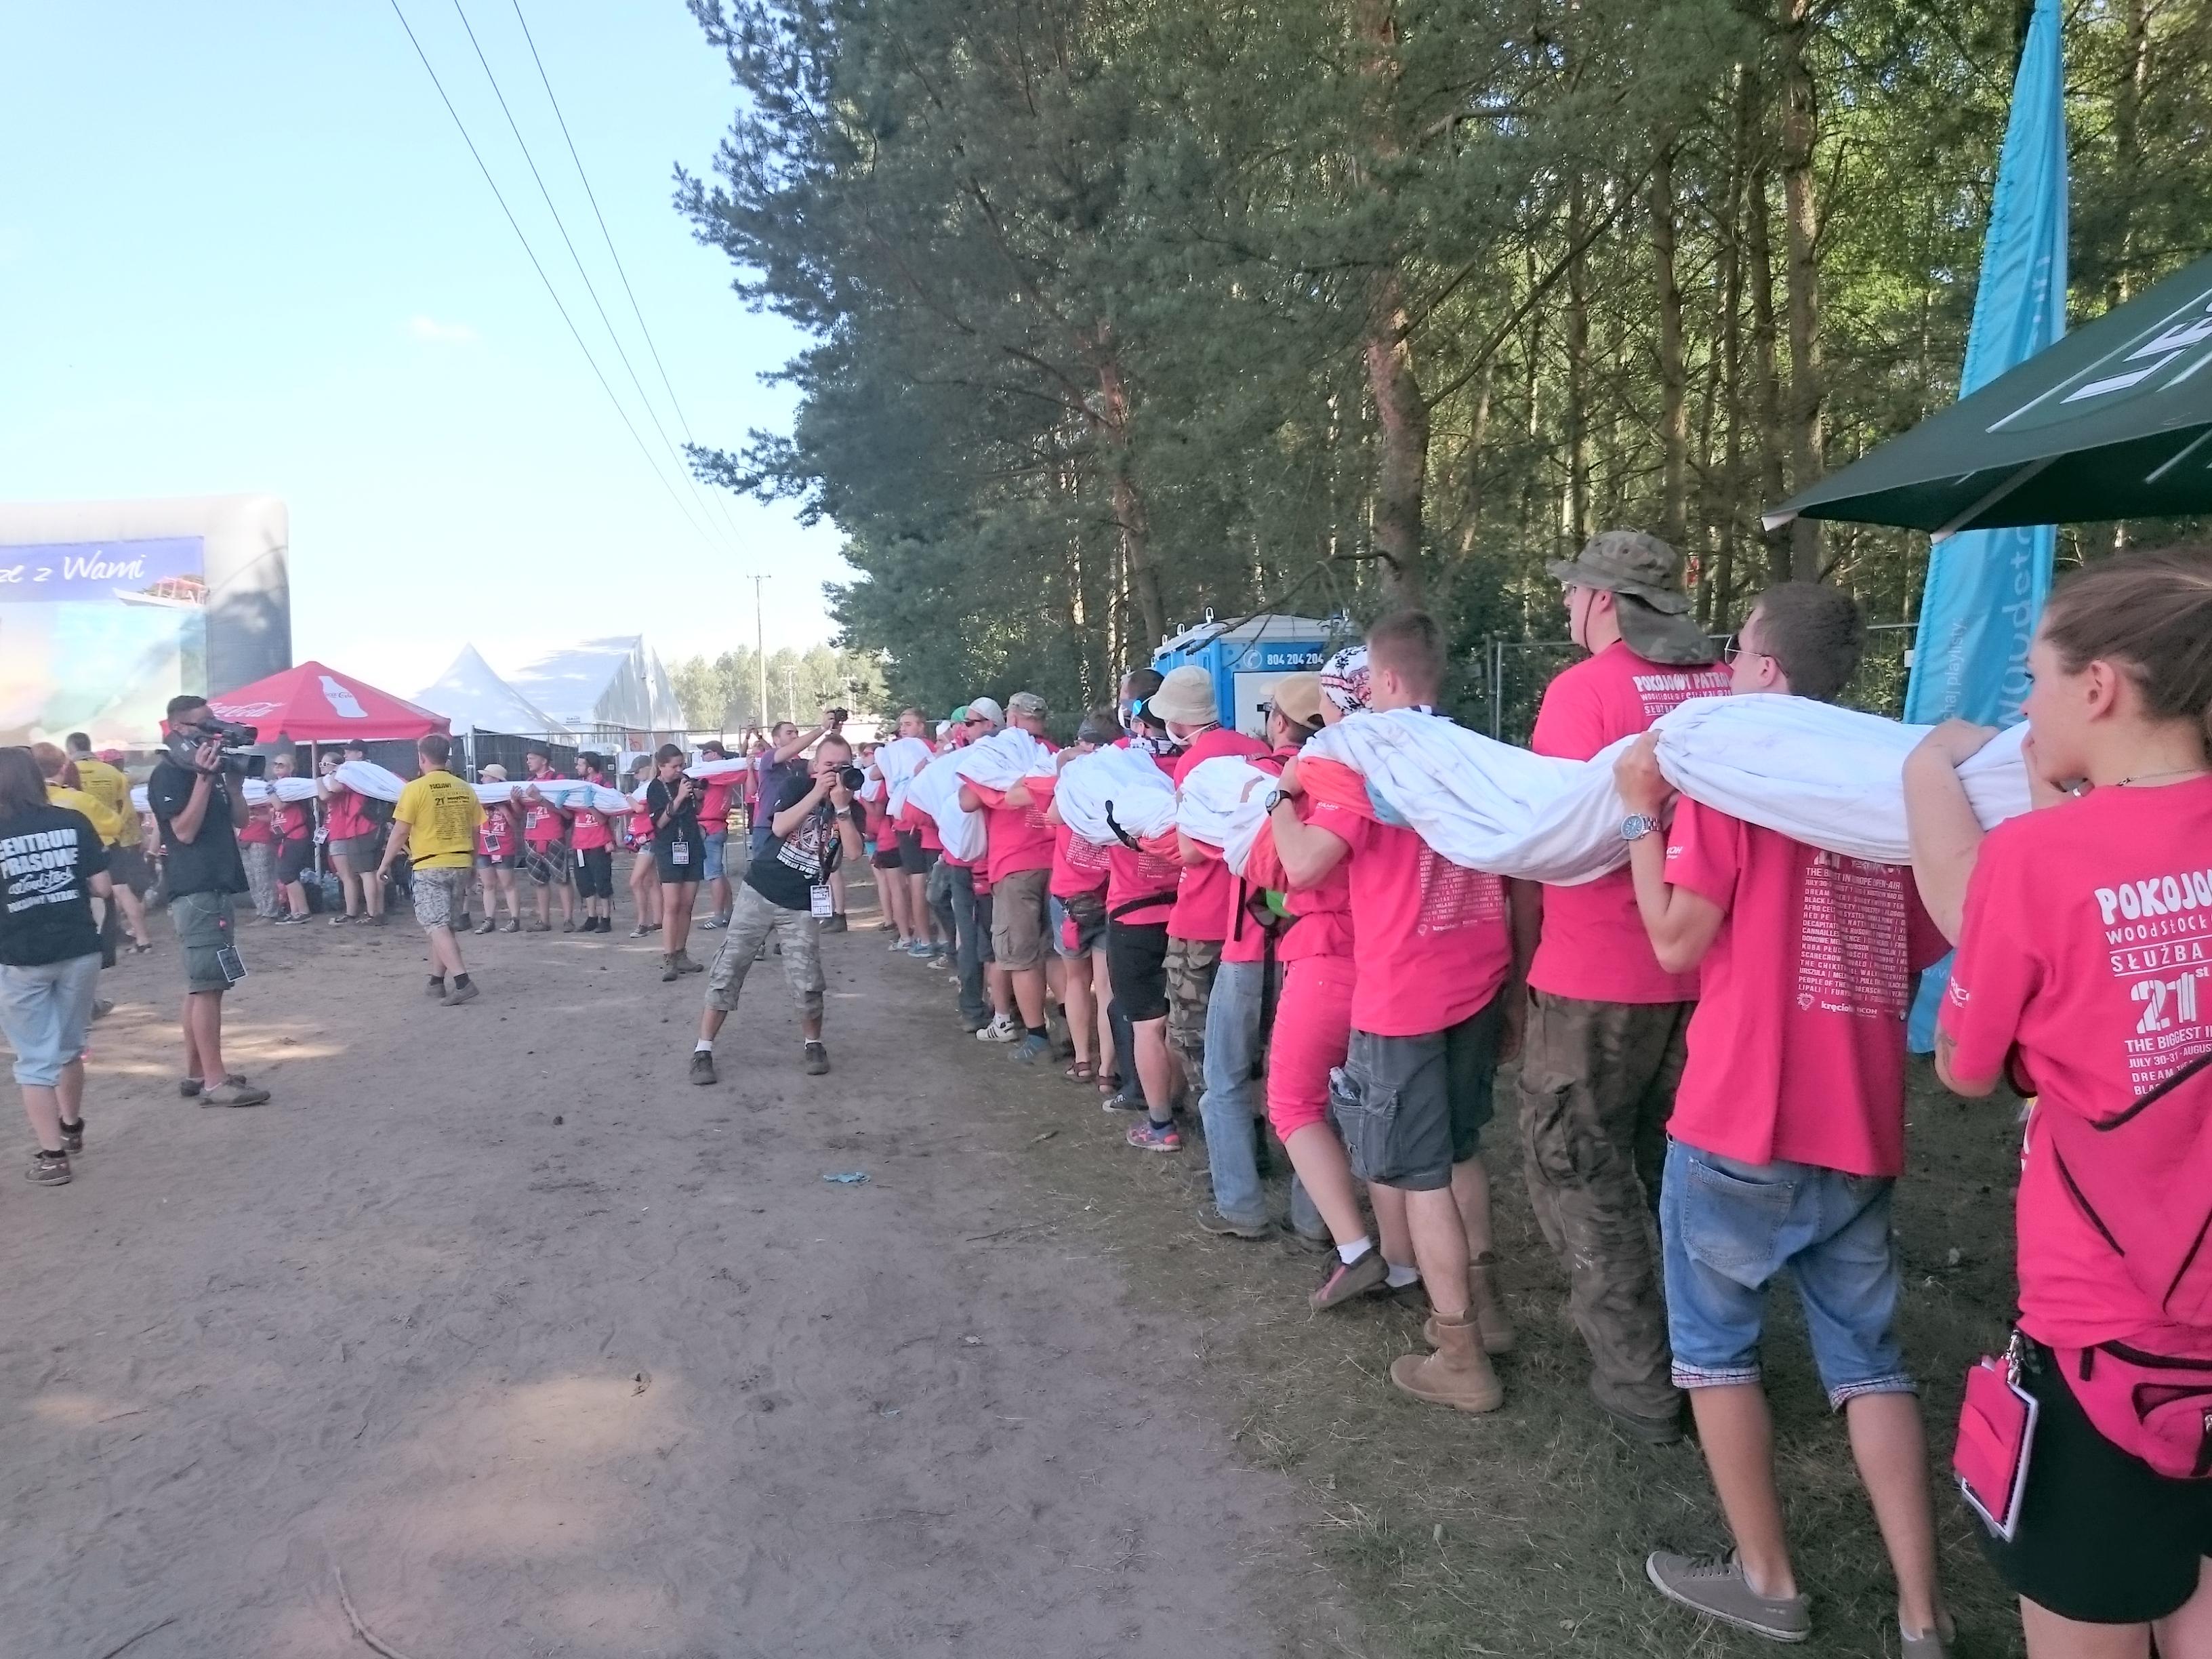 Przygotowania do Godziny "W" na Woodstocku - wolontariusze niosą gigantyczną polską flagę, która z inicjatywy Tomasza Zimocha powstała na Euro 2012. Flaga ma być rozwinięta na woodstockowym polu o 17.00